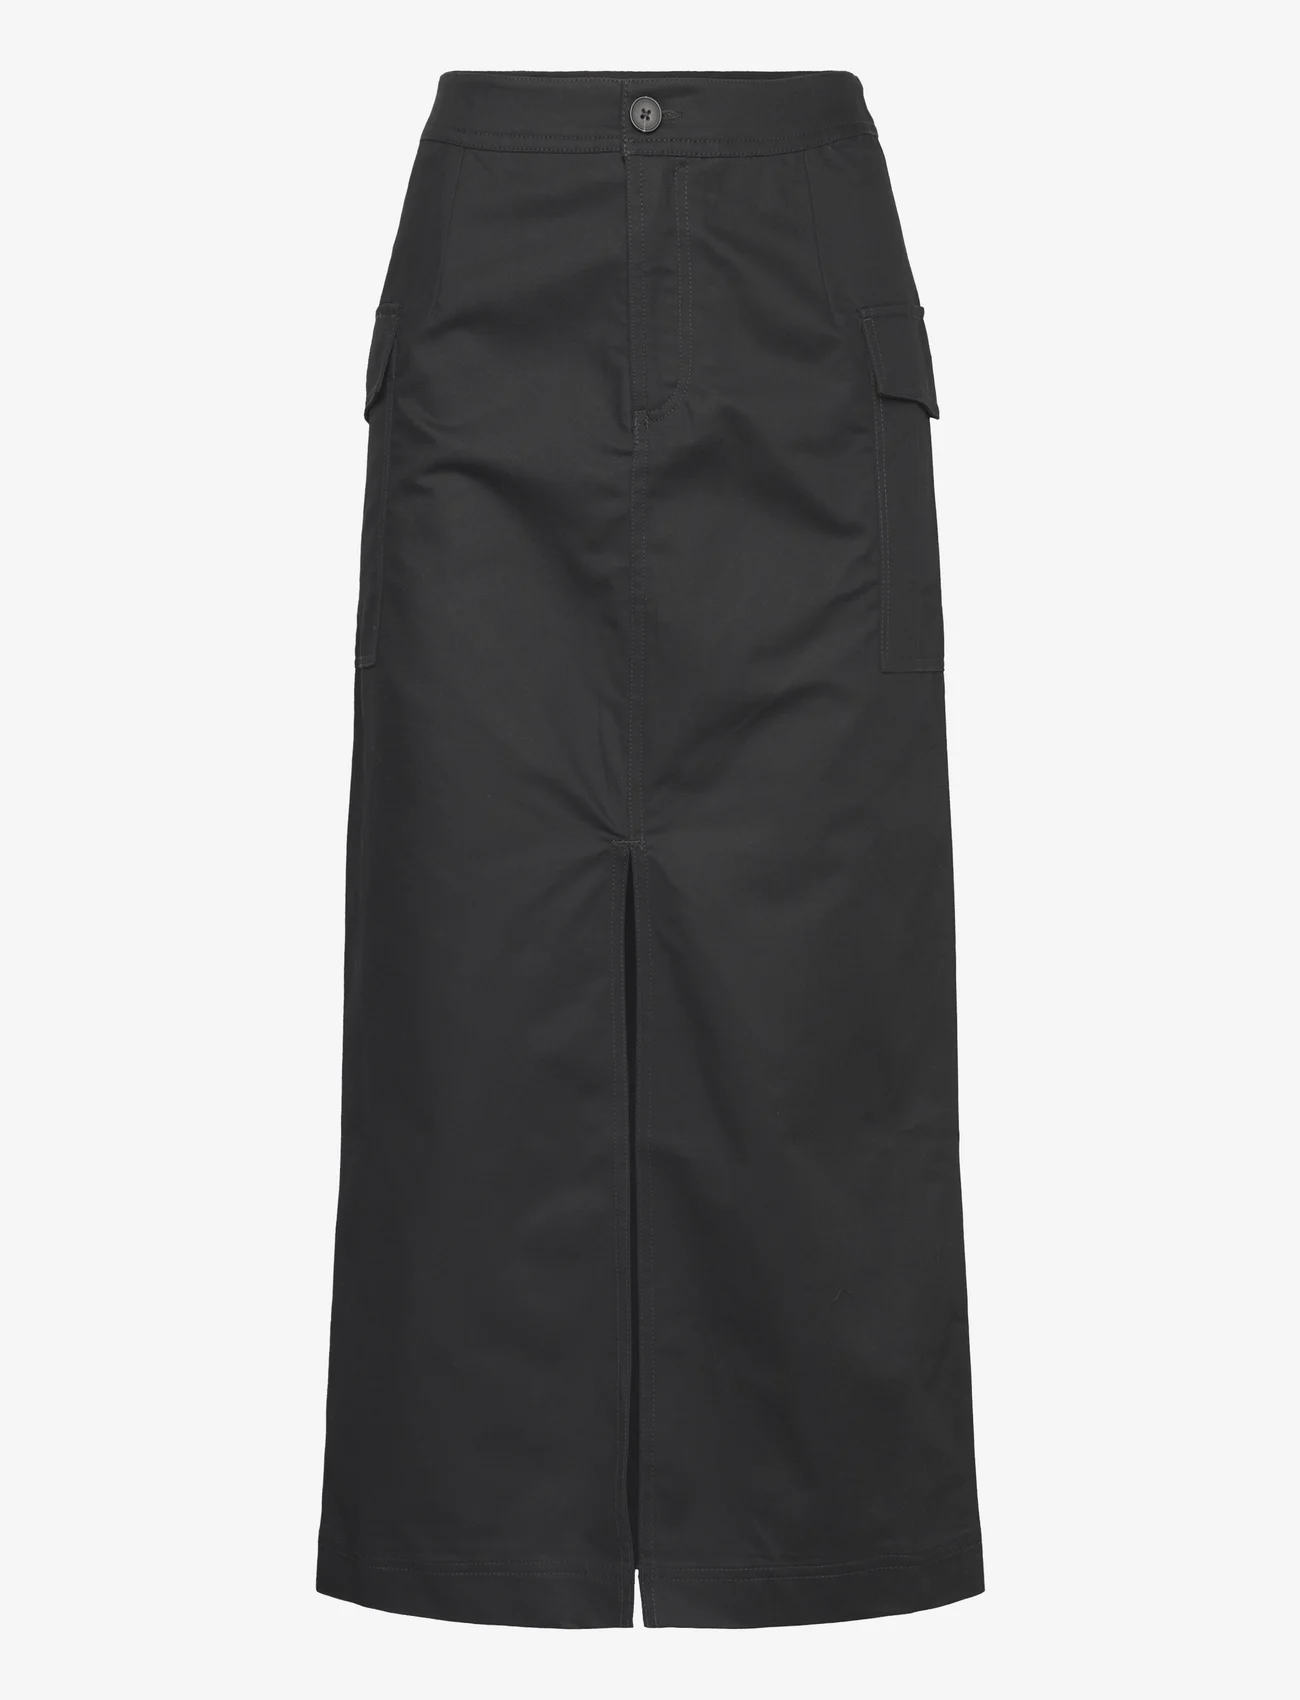 Lindex - Skirt Selma - midi kjolar - black - 0